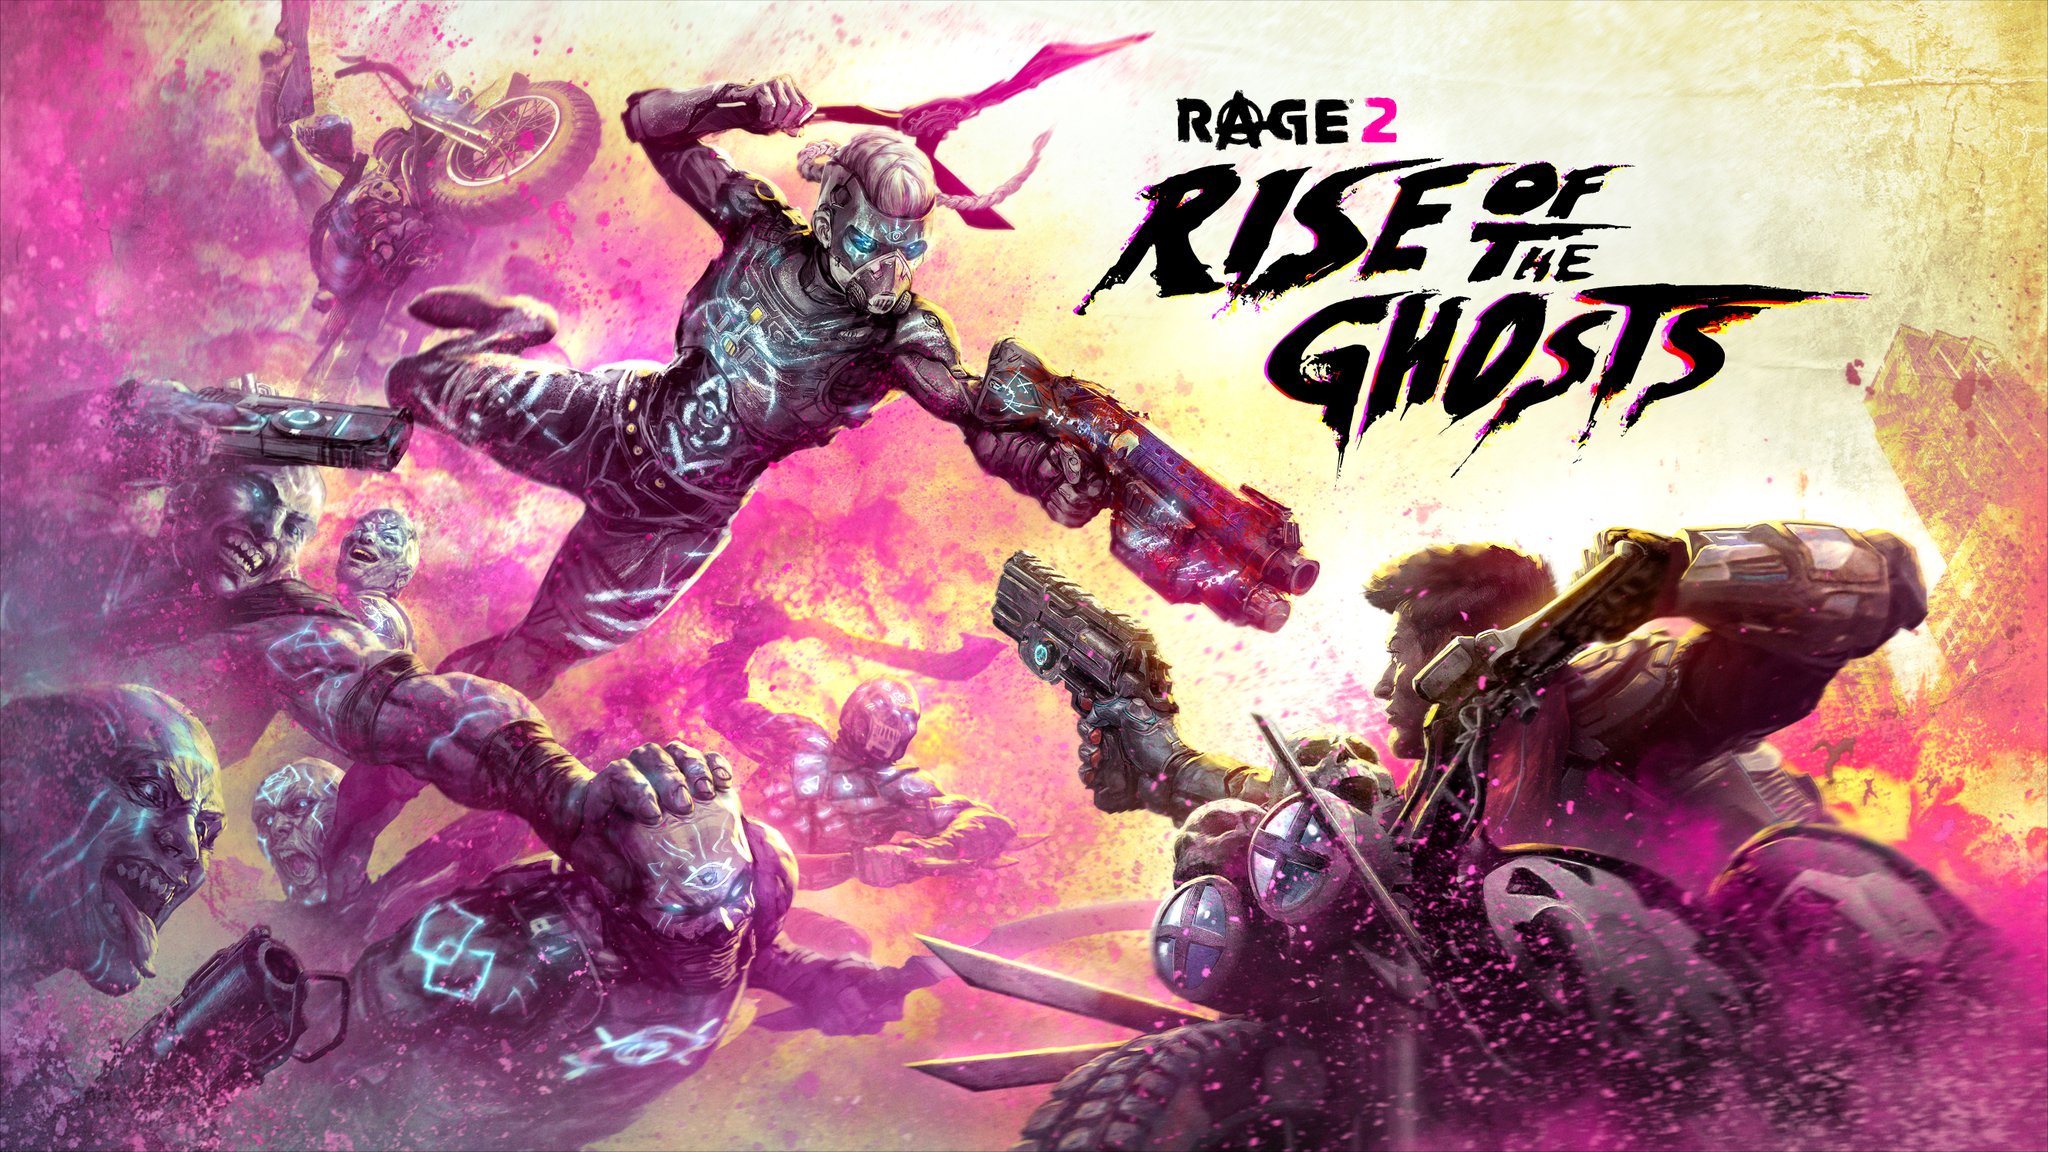 RAGE 2 - Ekspansi 'Rise of the Ghosts' akan tiba di PC, PS4 dan XB1 pada 26 September ini; Detail Baru